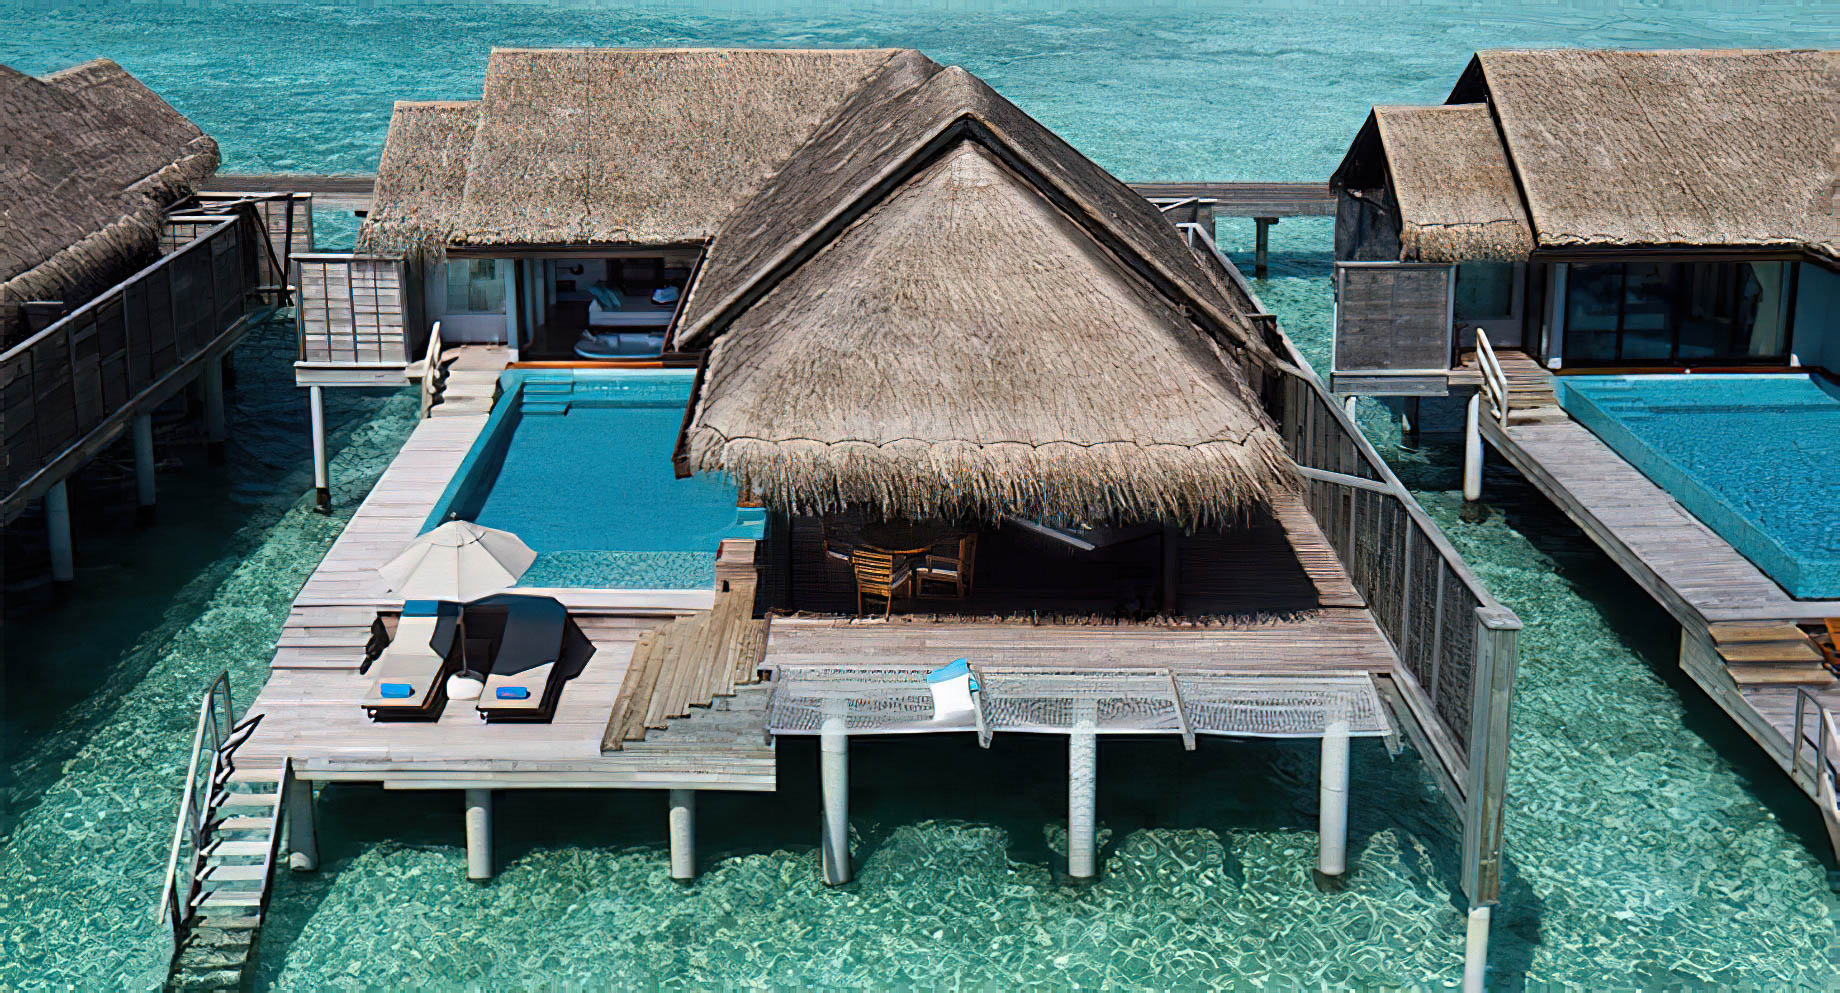 Anantara Kihavah Maldives Villas Resort – Baa Atoll, Maldives – Over Water Pool Villa Aerial View